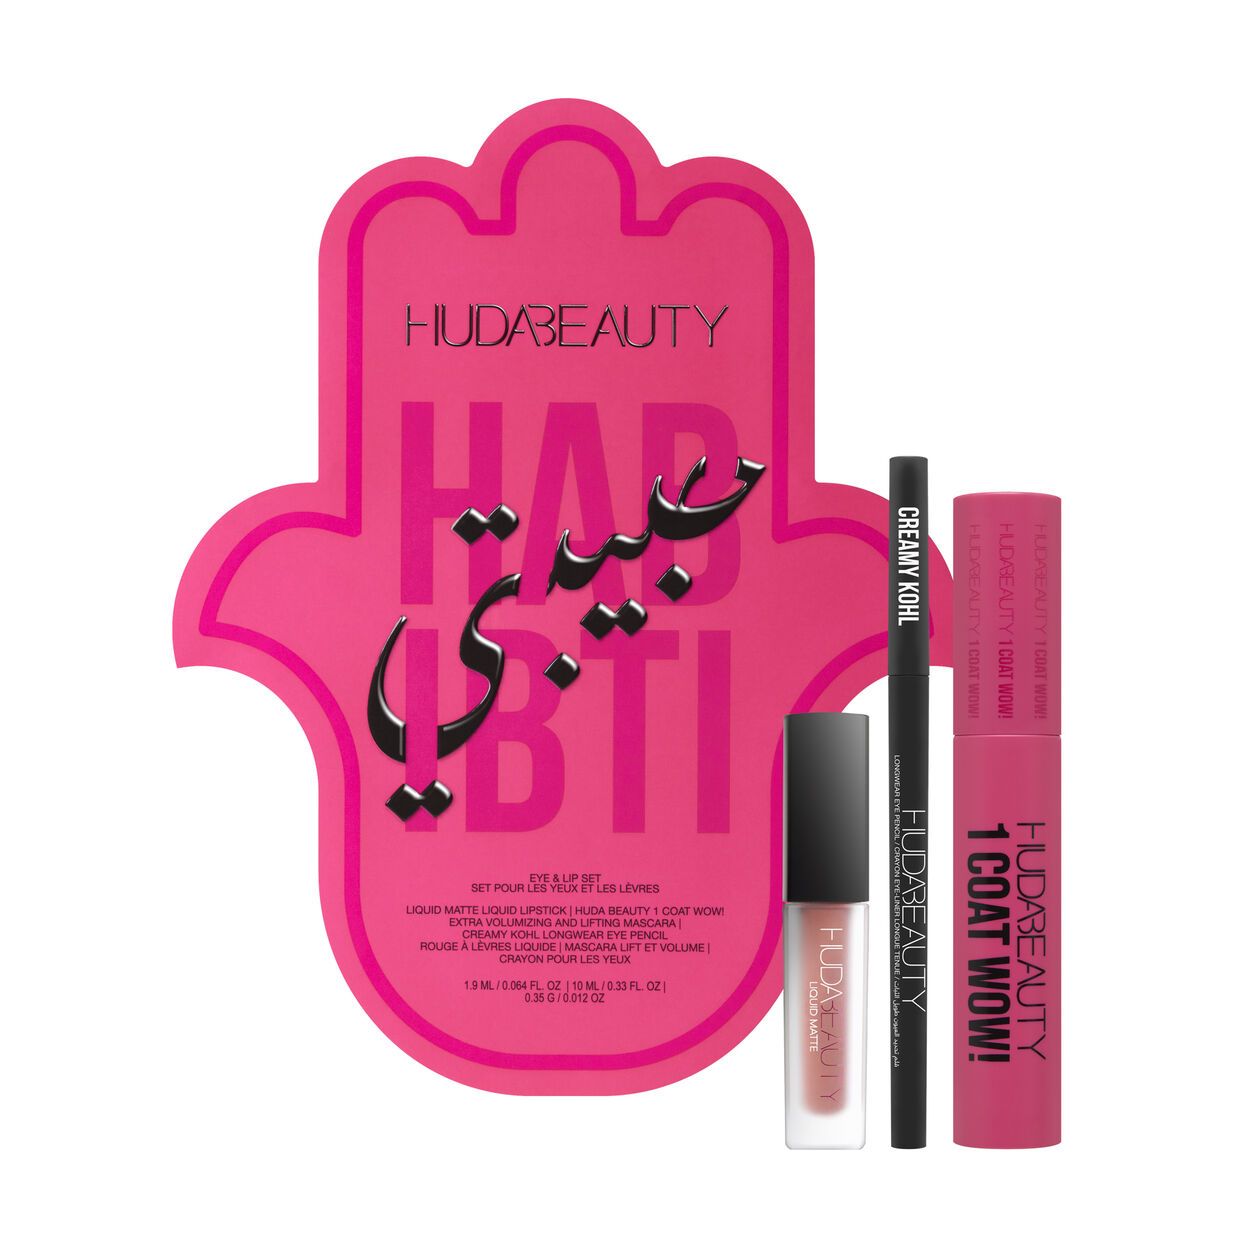 Huda Beauty Habibti Eye and Lip Set | Huda Beauty UK